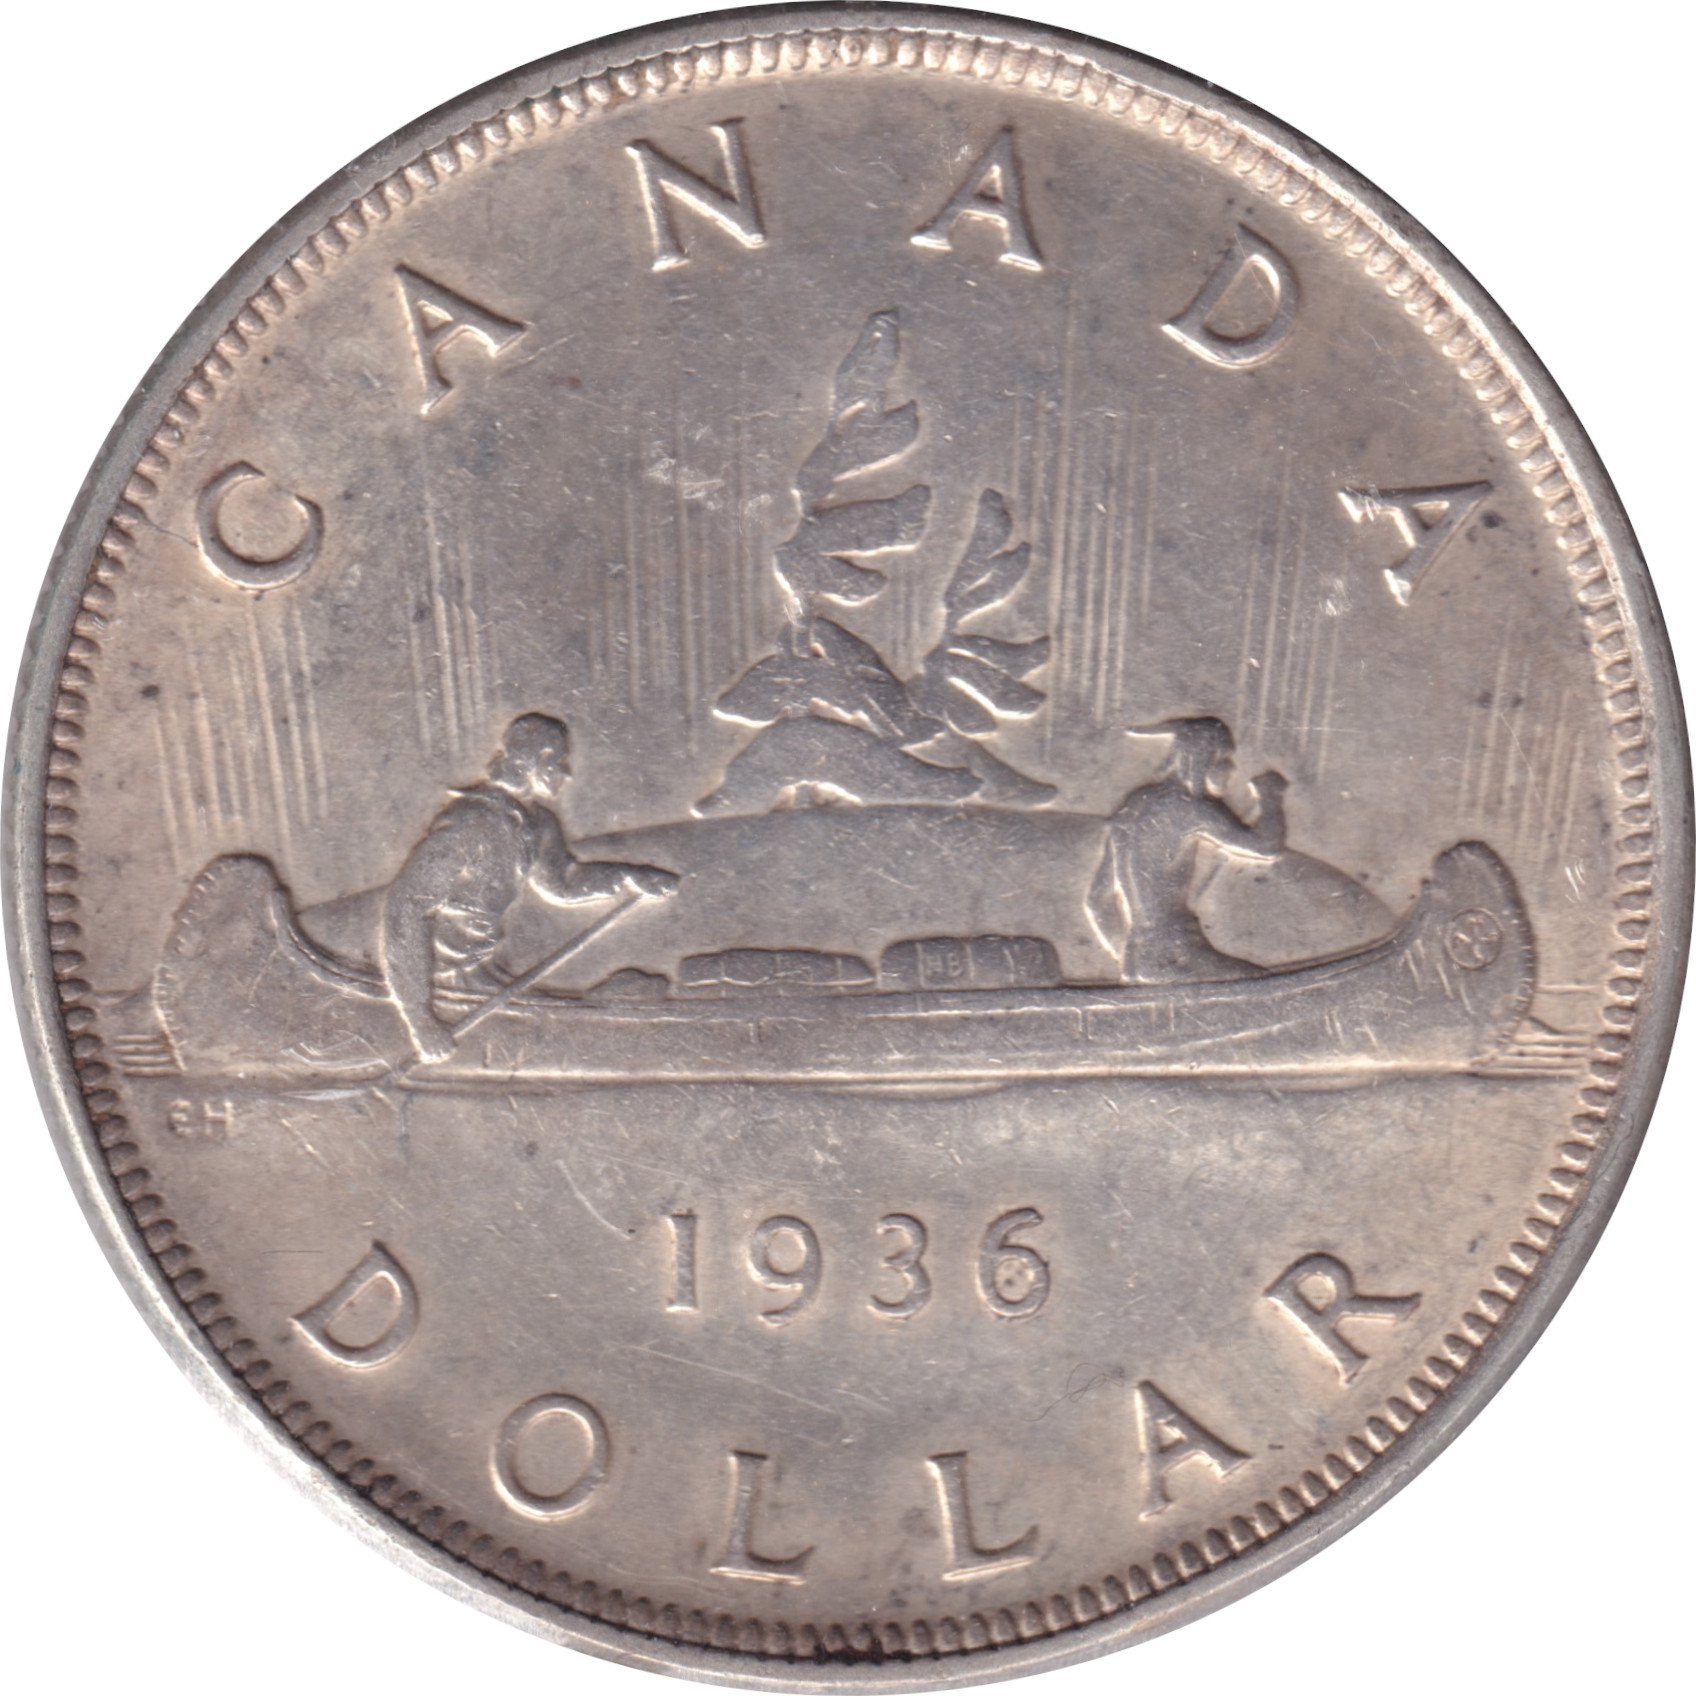 1 dollar - George V